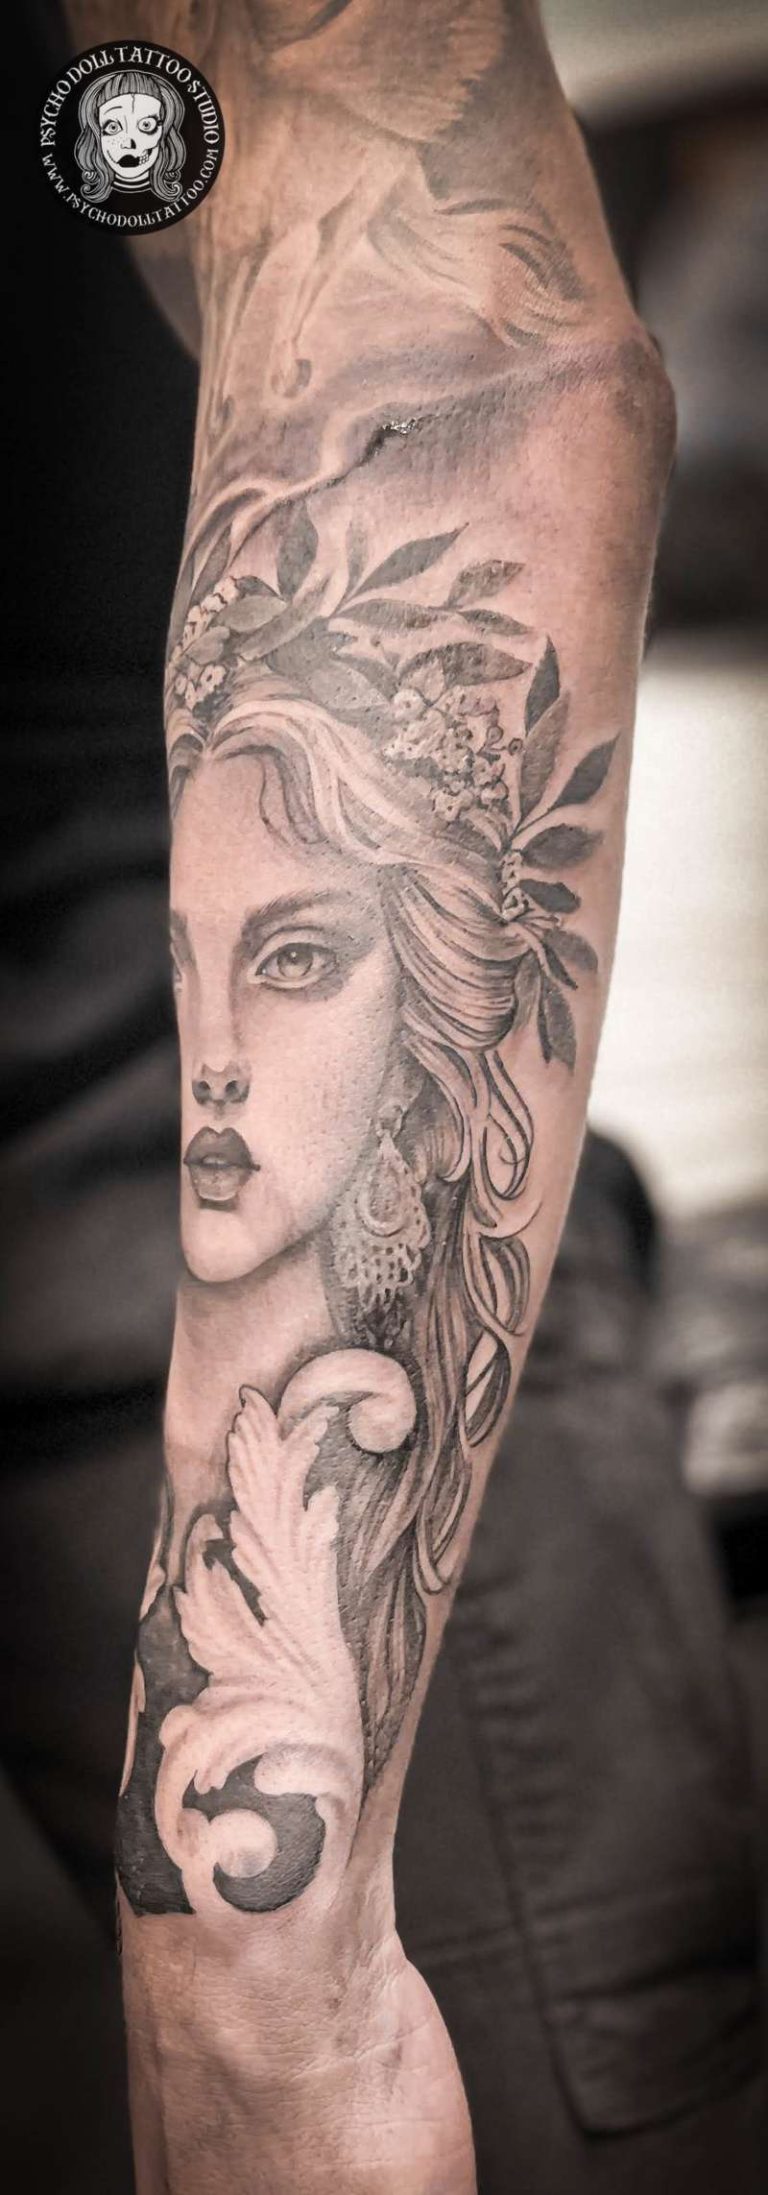 græsk gudinde tatovering